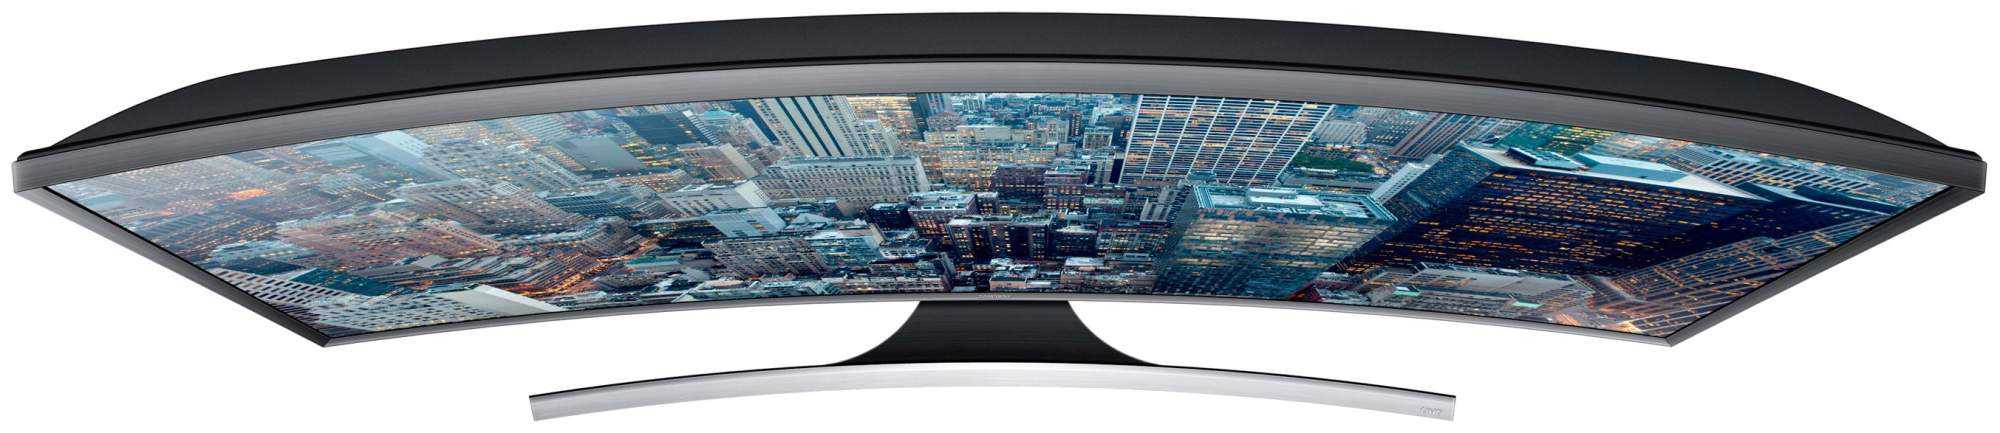 Телевизор Samsung UE48JU7500U - подробные характеристики обзоры видео фото Цены в интернет-магазинах где можно купить телевизор Samsung UE48JU7500U